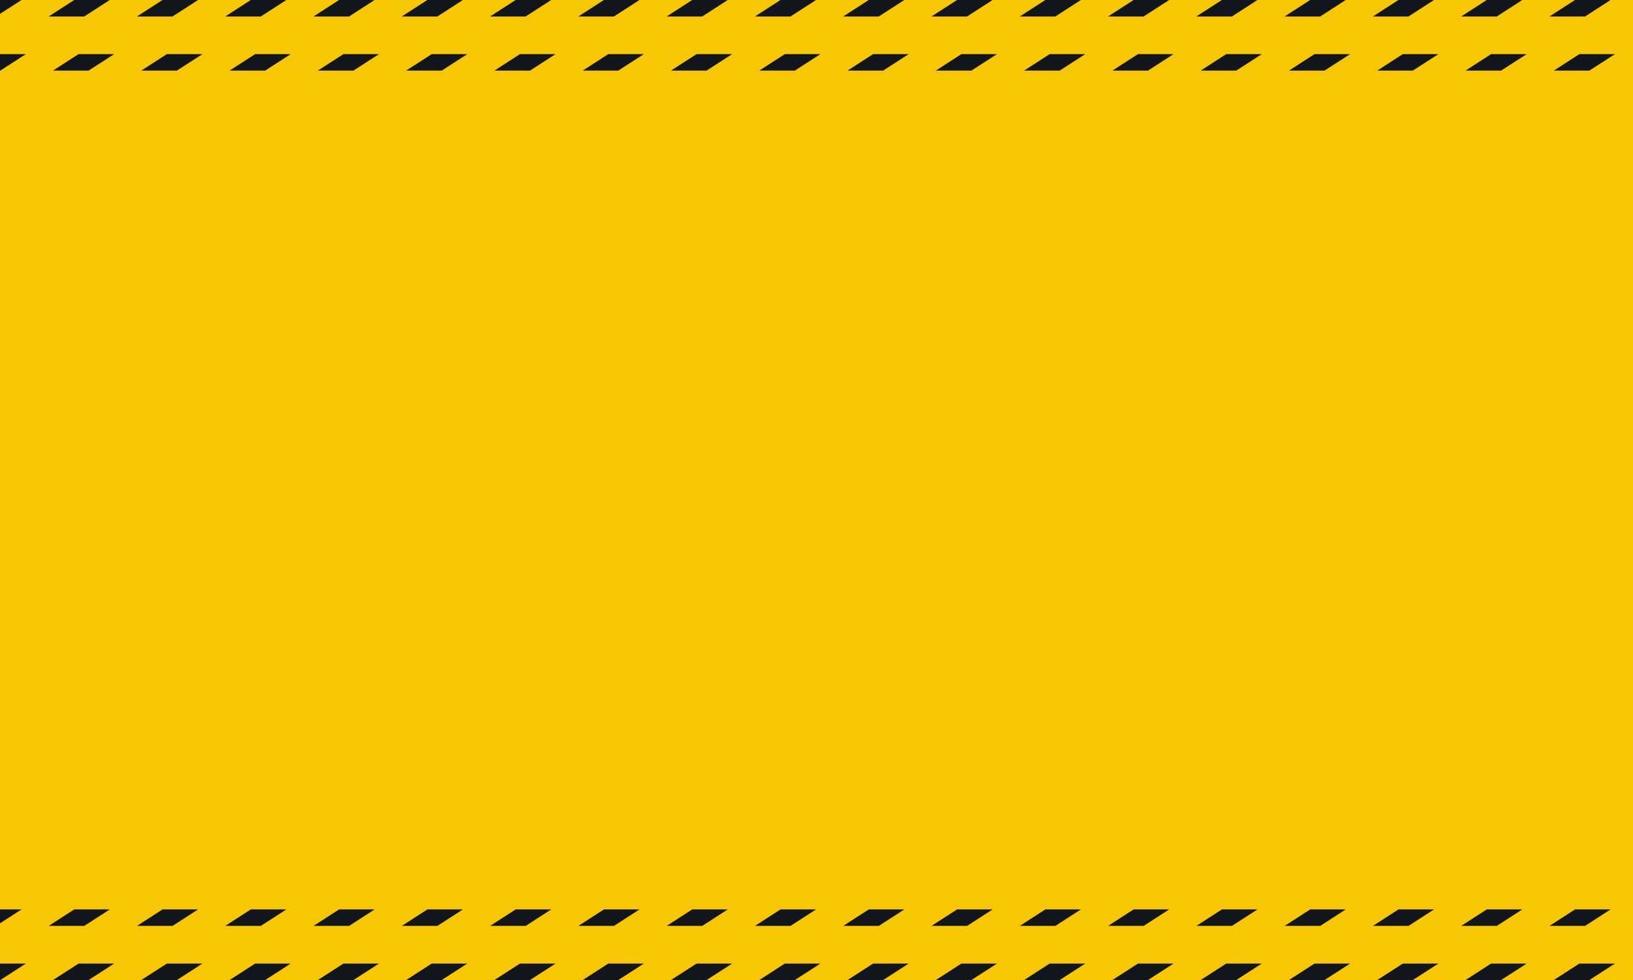 zwart geel gestreept banier muur risico industrieel gestreept weg waarschuwing geel zwart diagonaal strepen. vector illustratie.